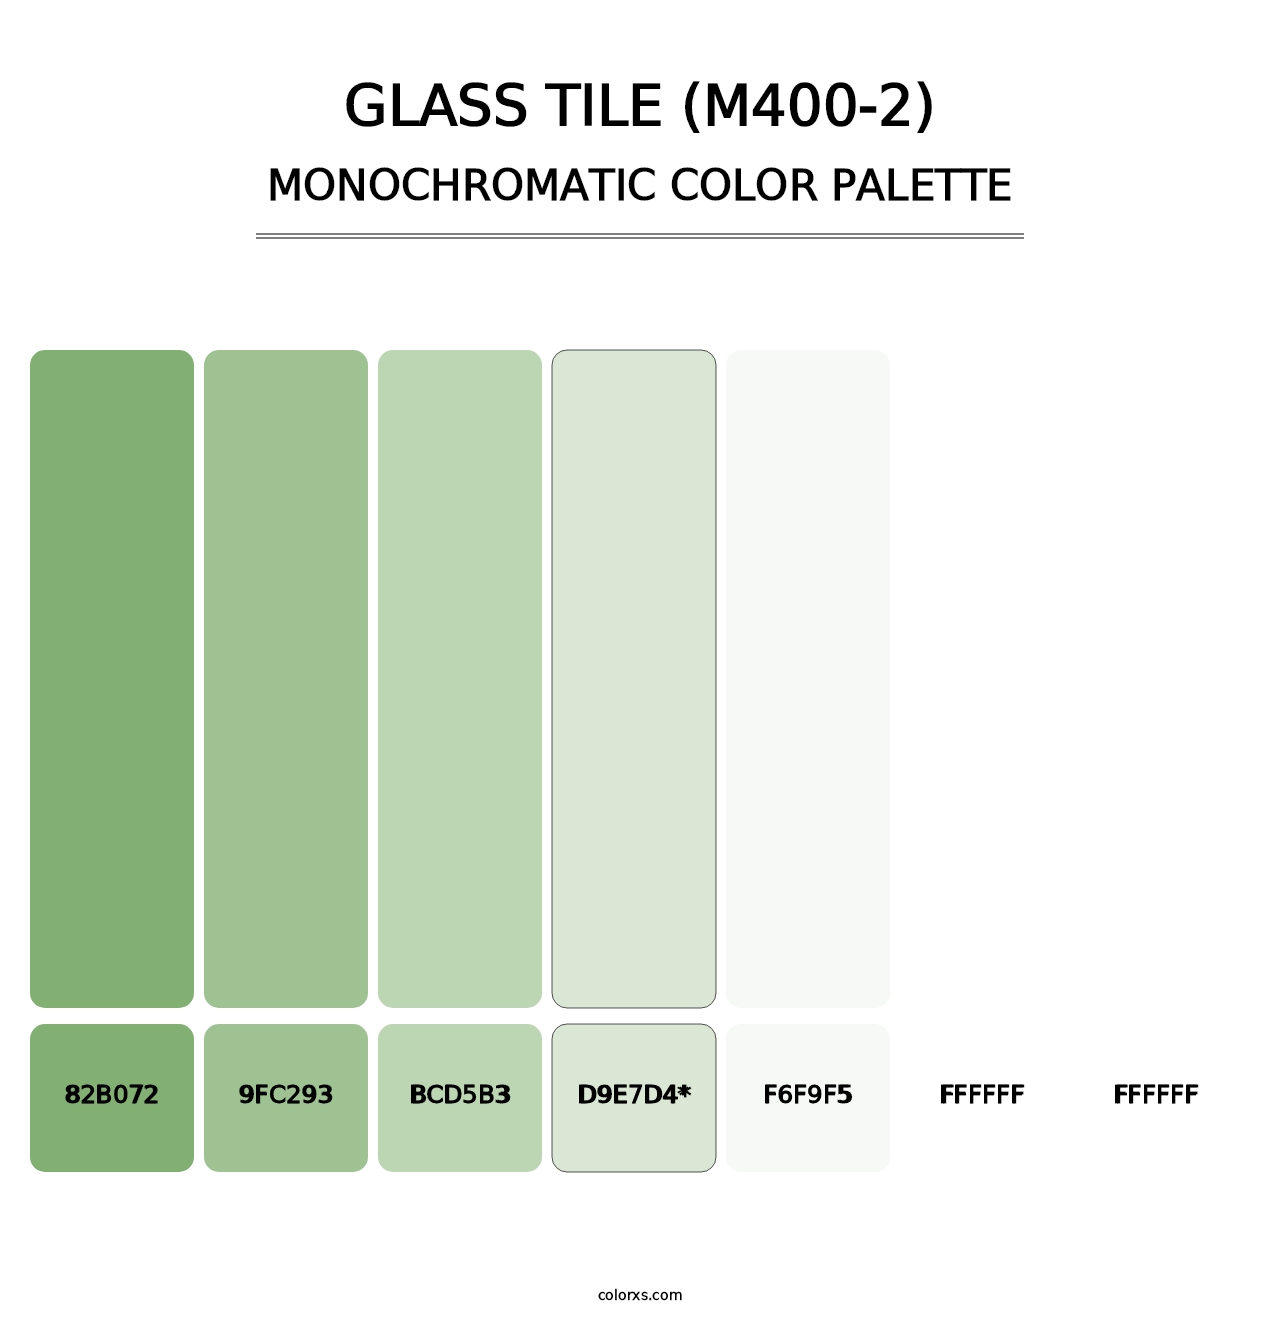 Glass Tile (M400-2) - Monochromatic Color Palette